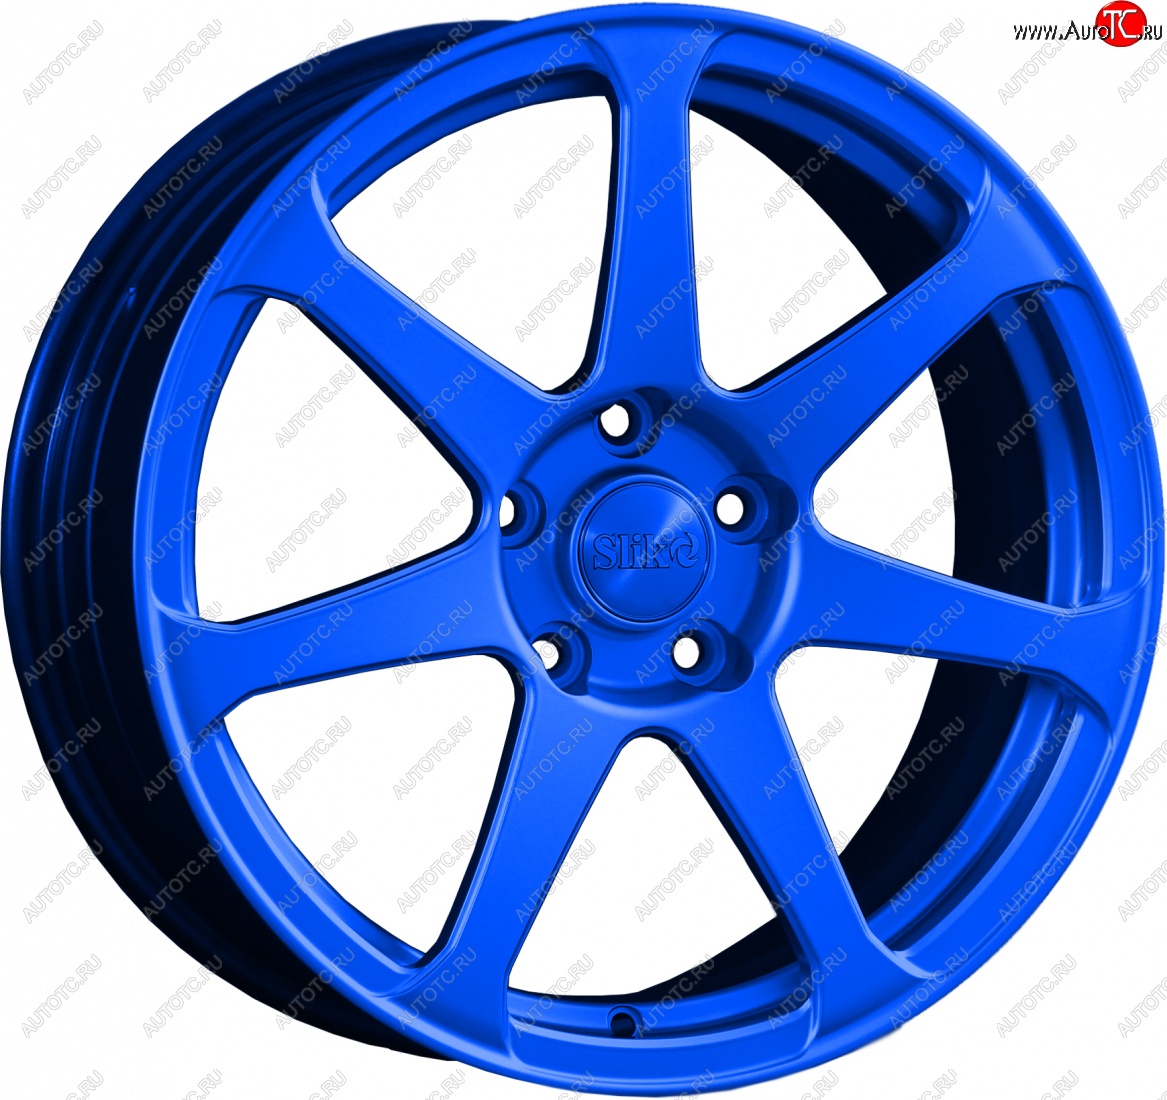 14 499 р. Кованый диск Slik classik R17x7.5 Candy BLUE синий 7.5x17 Chevrolet Lacetti хэтчбек (2002-2013) 4x114.3xDIA56.6xET44.0 (Цвет: Candy BLUE синий 7.5x17)